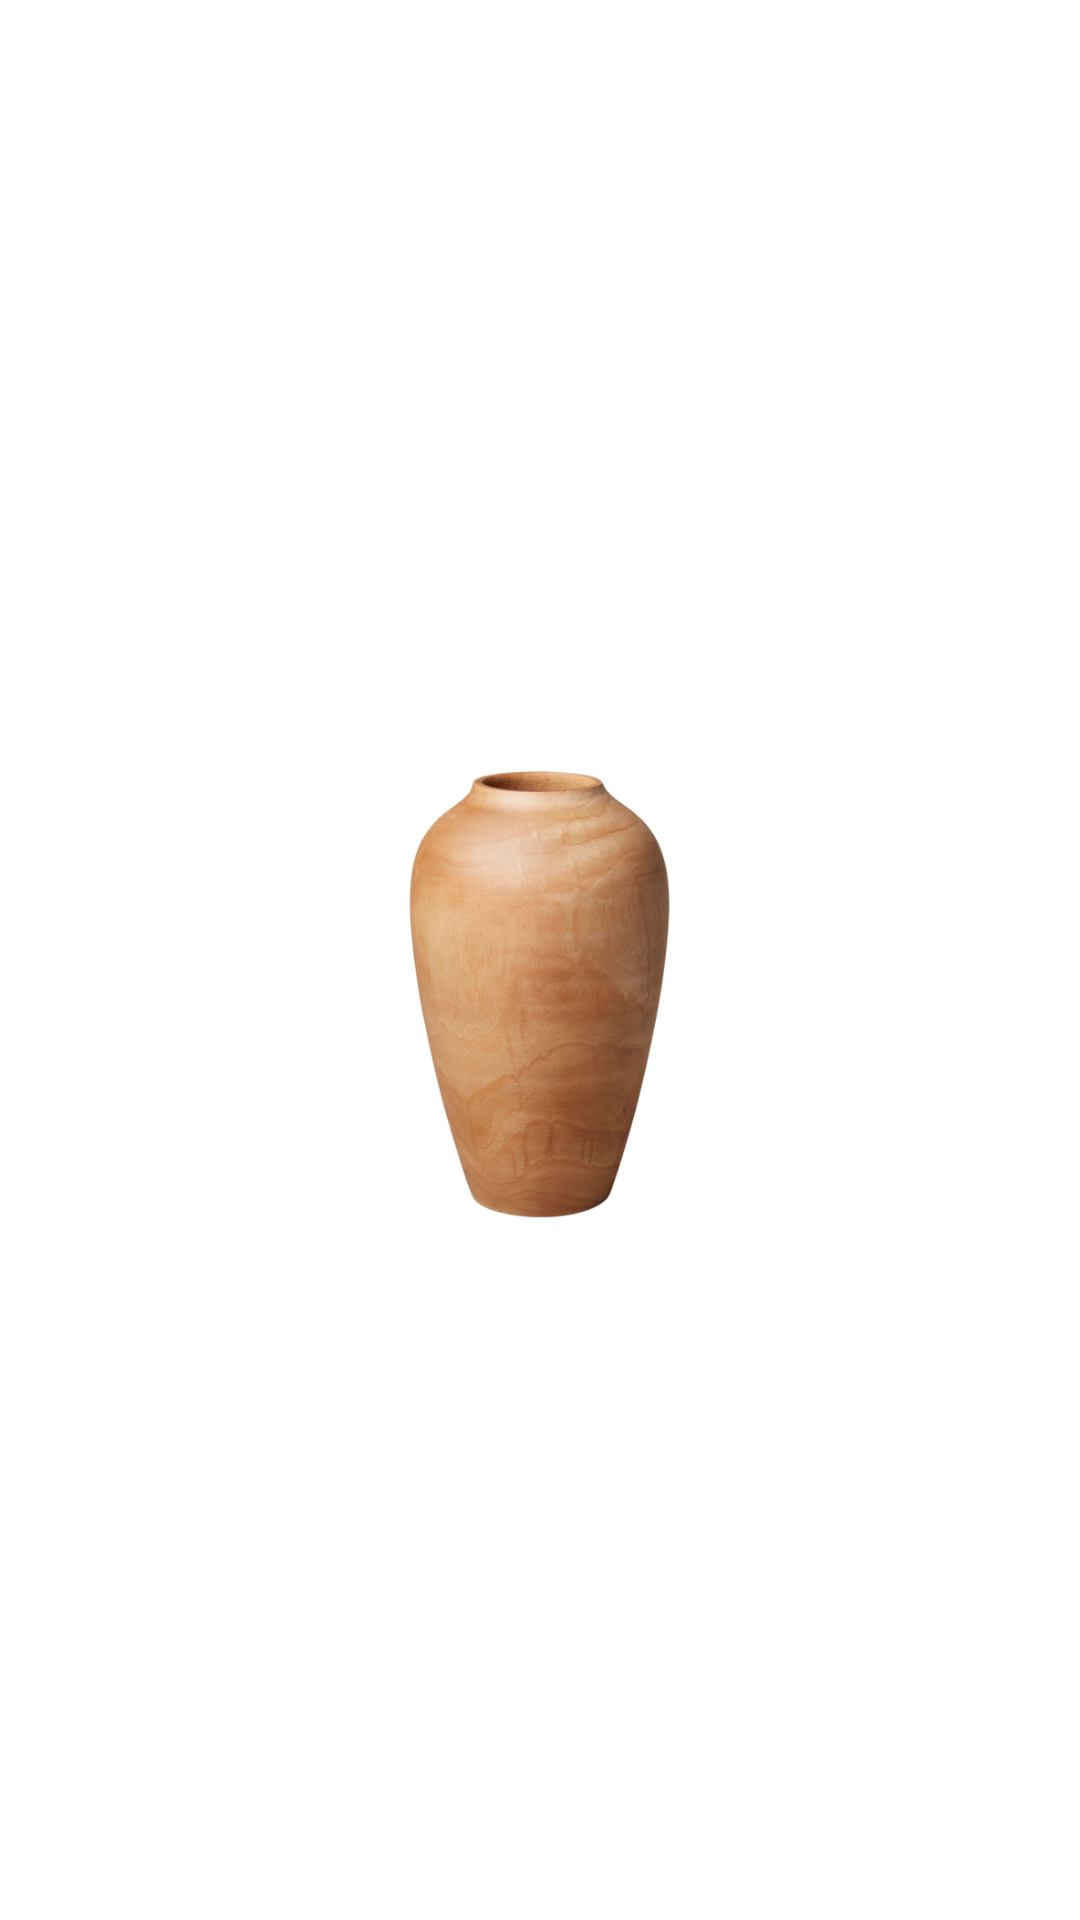 Mango Wood Classic Vase